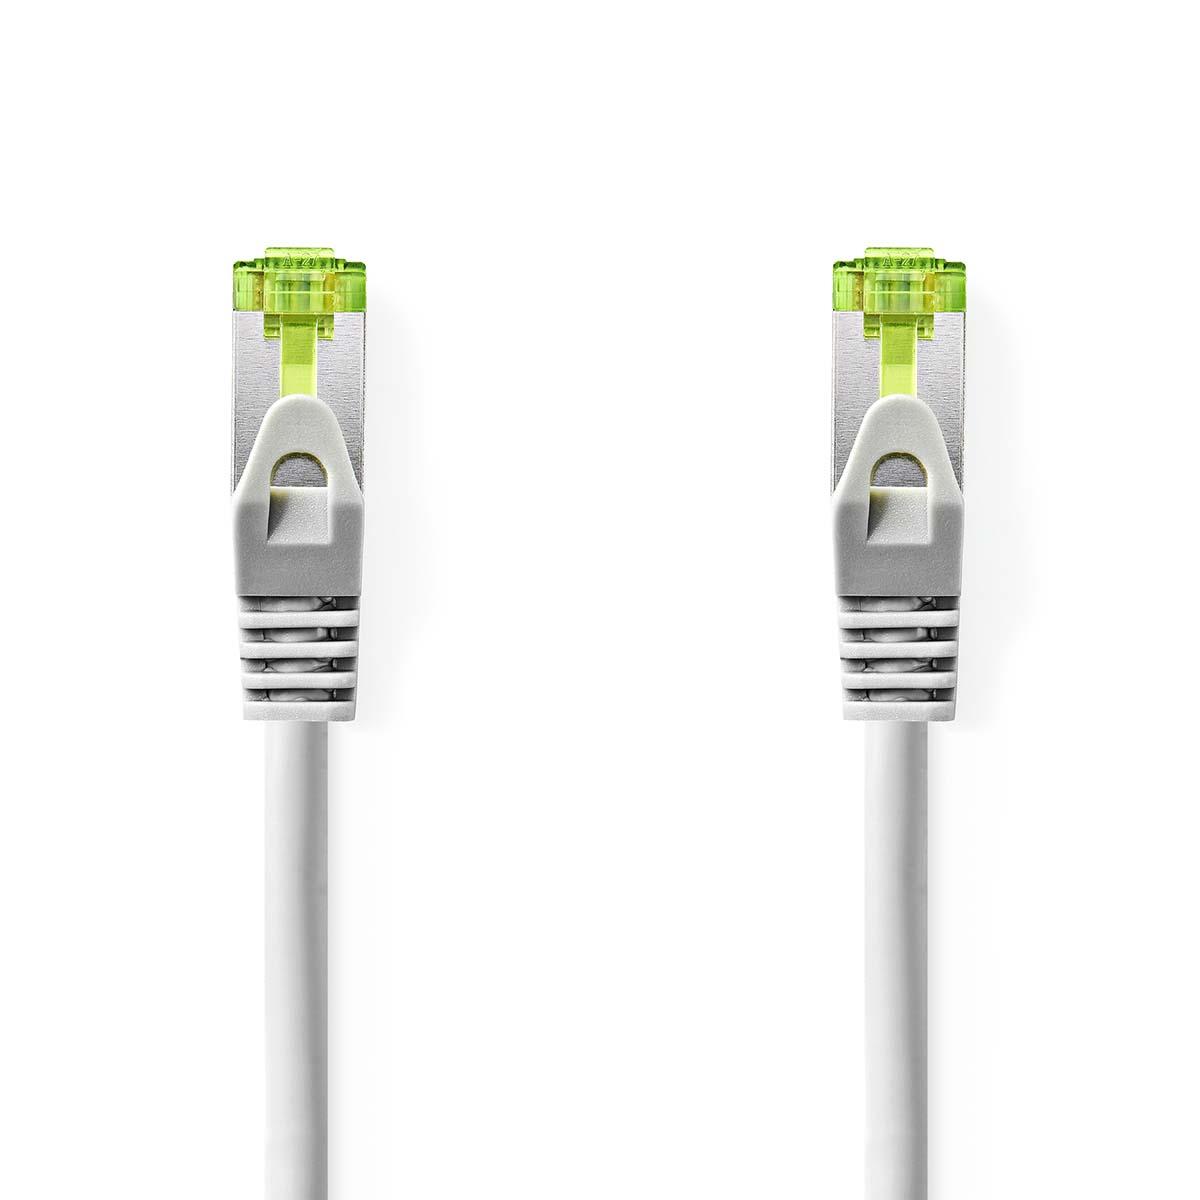 Cable ethernet rj45(8p8c) cat7 (10000 mbit/s) gris 2.0m